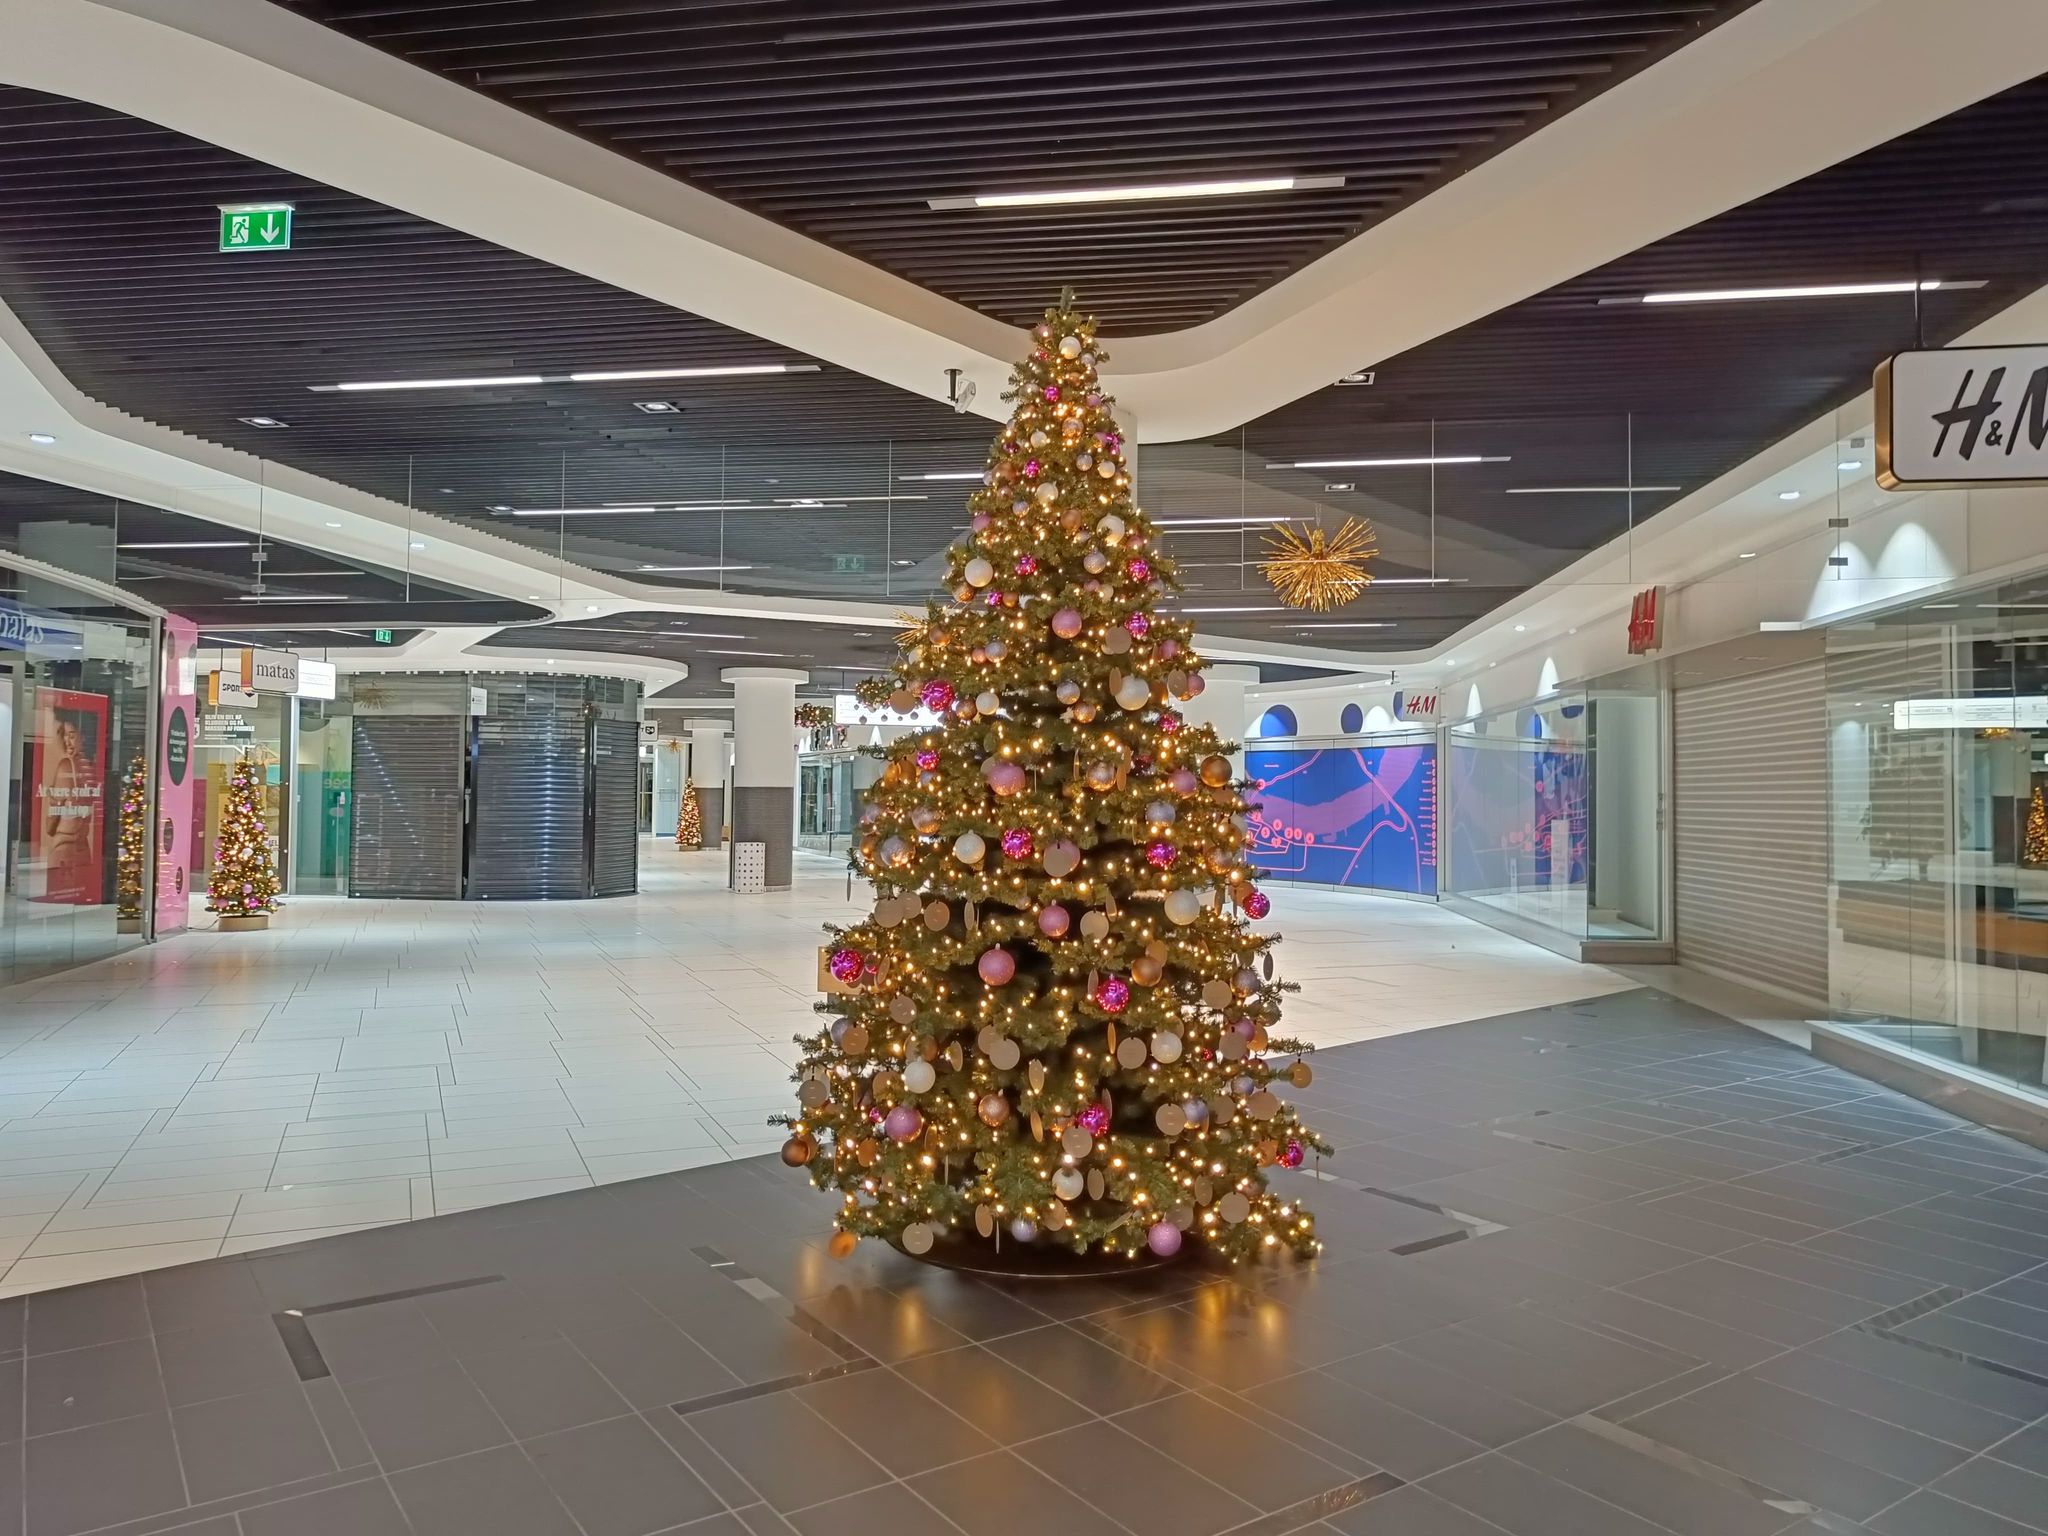 Kunstigt juletræ med julekugler og lyskæder